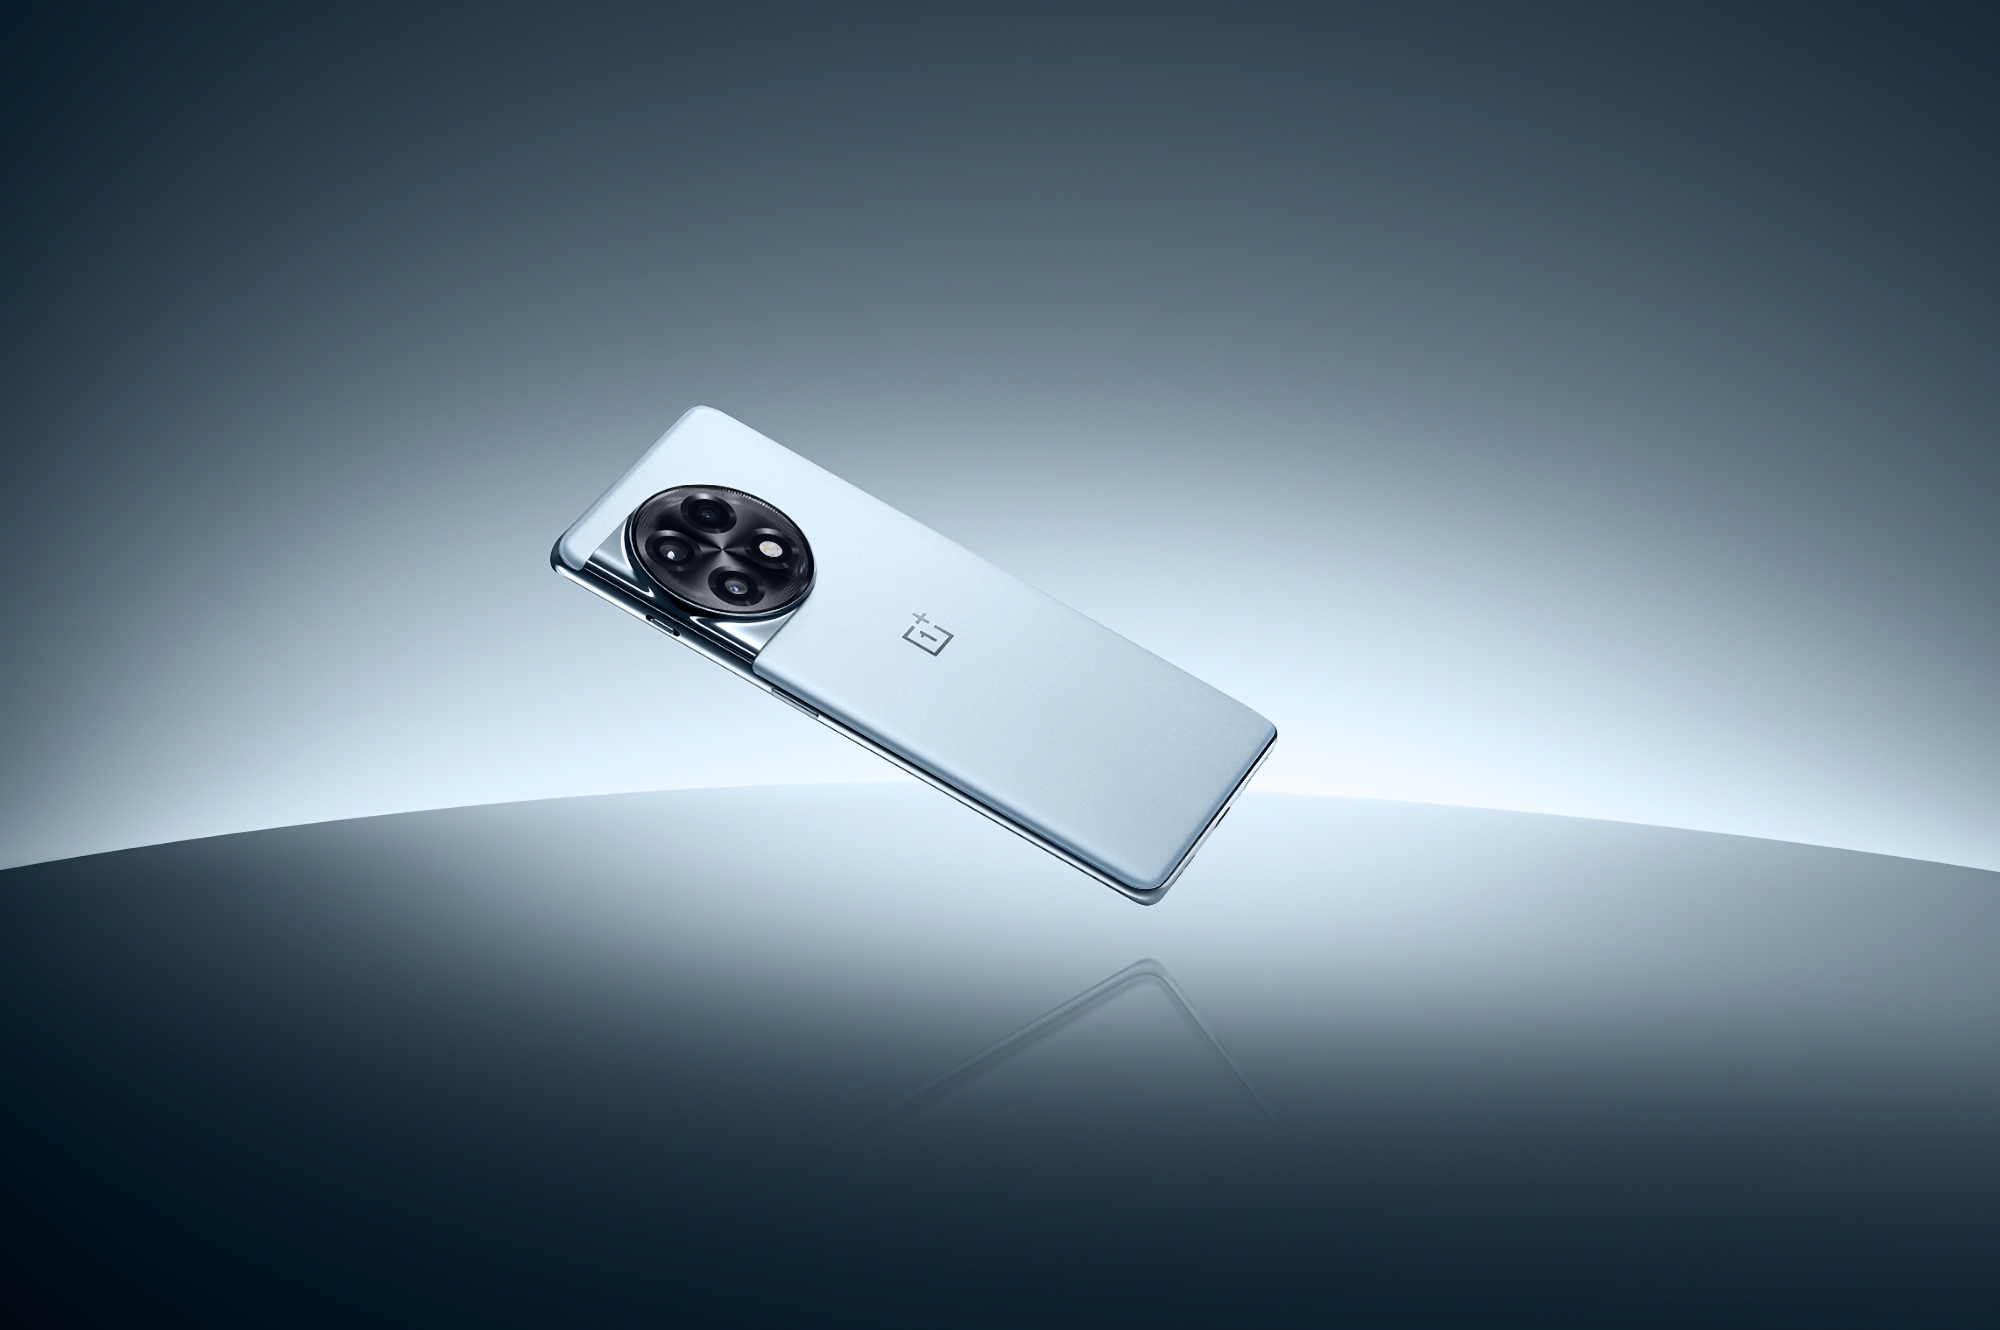 Confirmé : Le OnePlus Ace 2 sera doté d'une batterie de 5000 mAh et d'un système de charge rapide de 100 W.